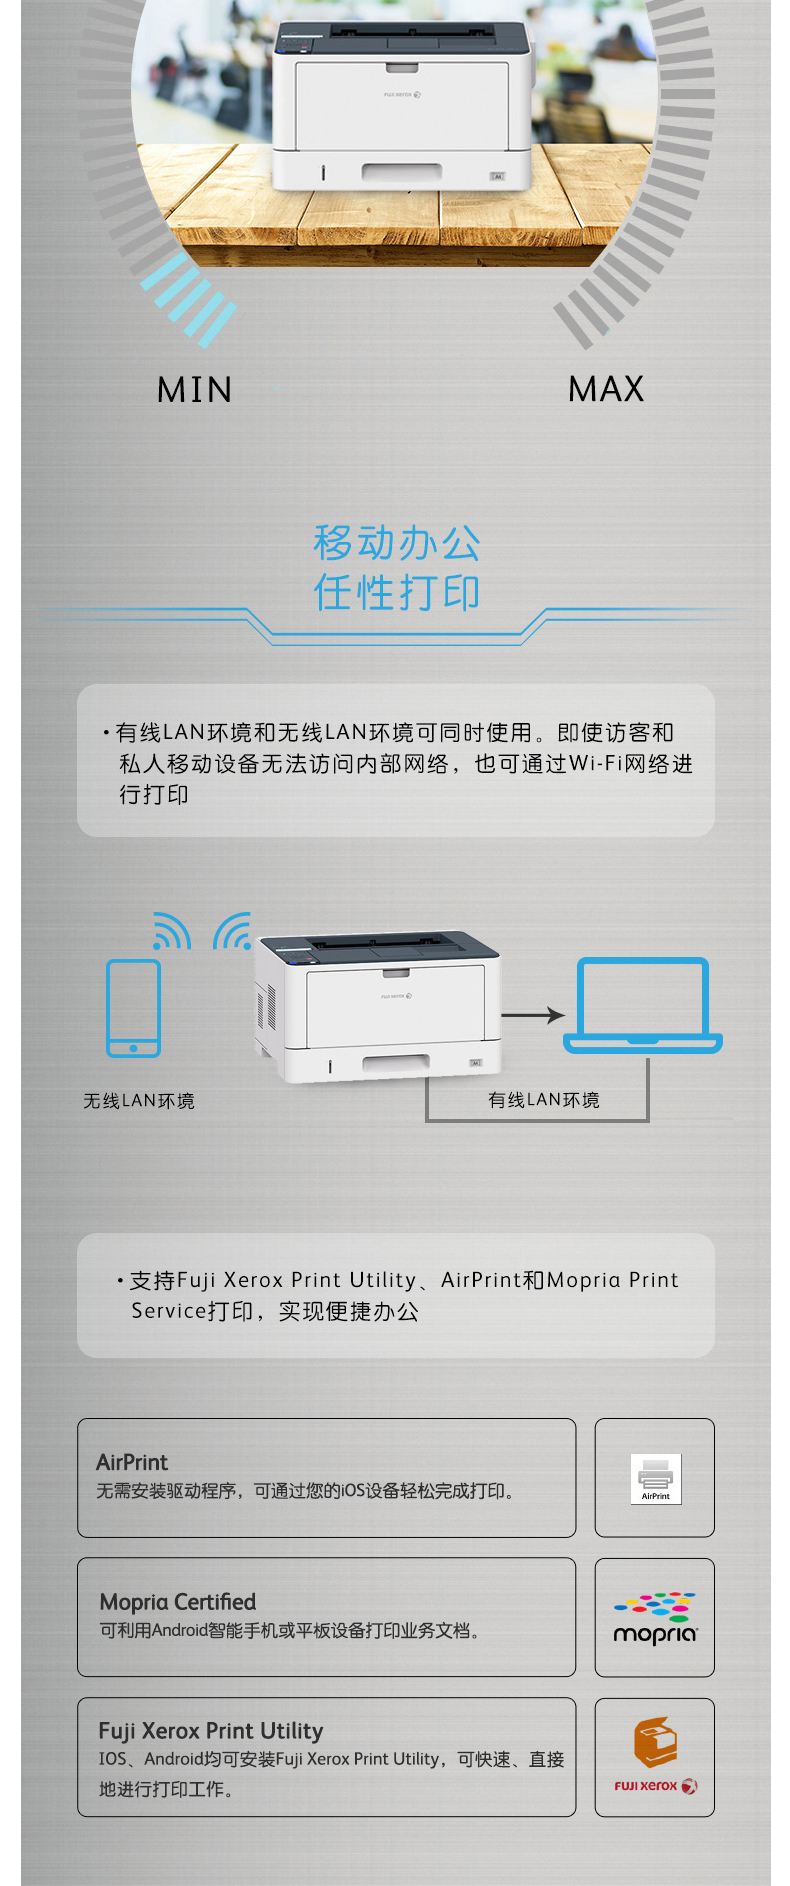 富士施乐 FUJI XEROX A3黑白双面激光打印机 DocuPrint 3208d 